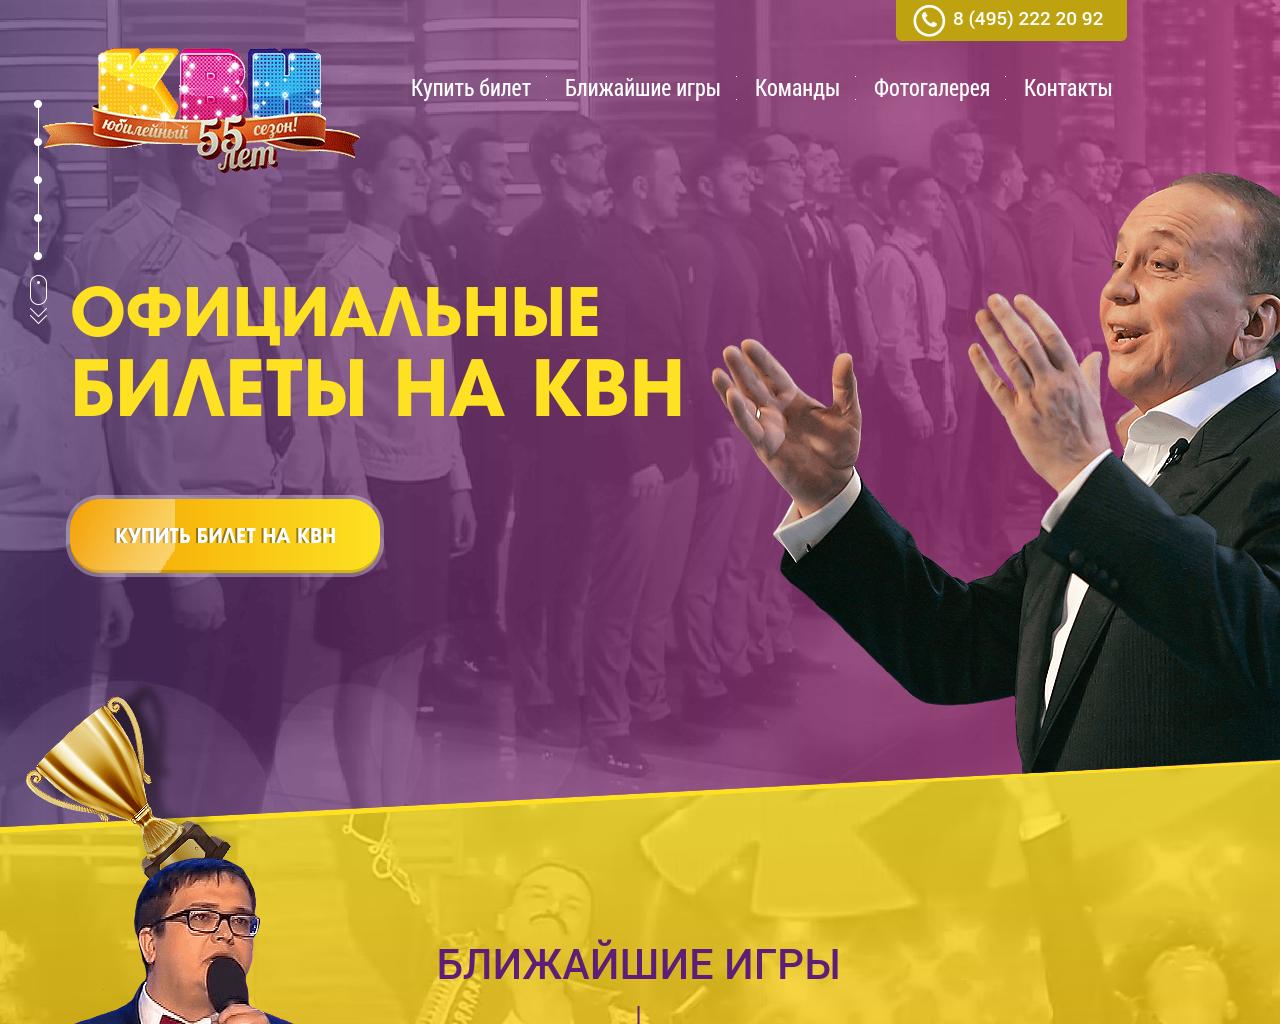 Изображение сайта kvn-ticket.ru в разрешении 1280x1024